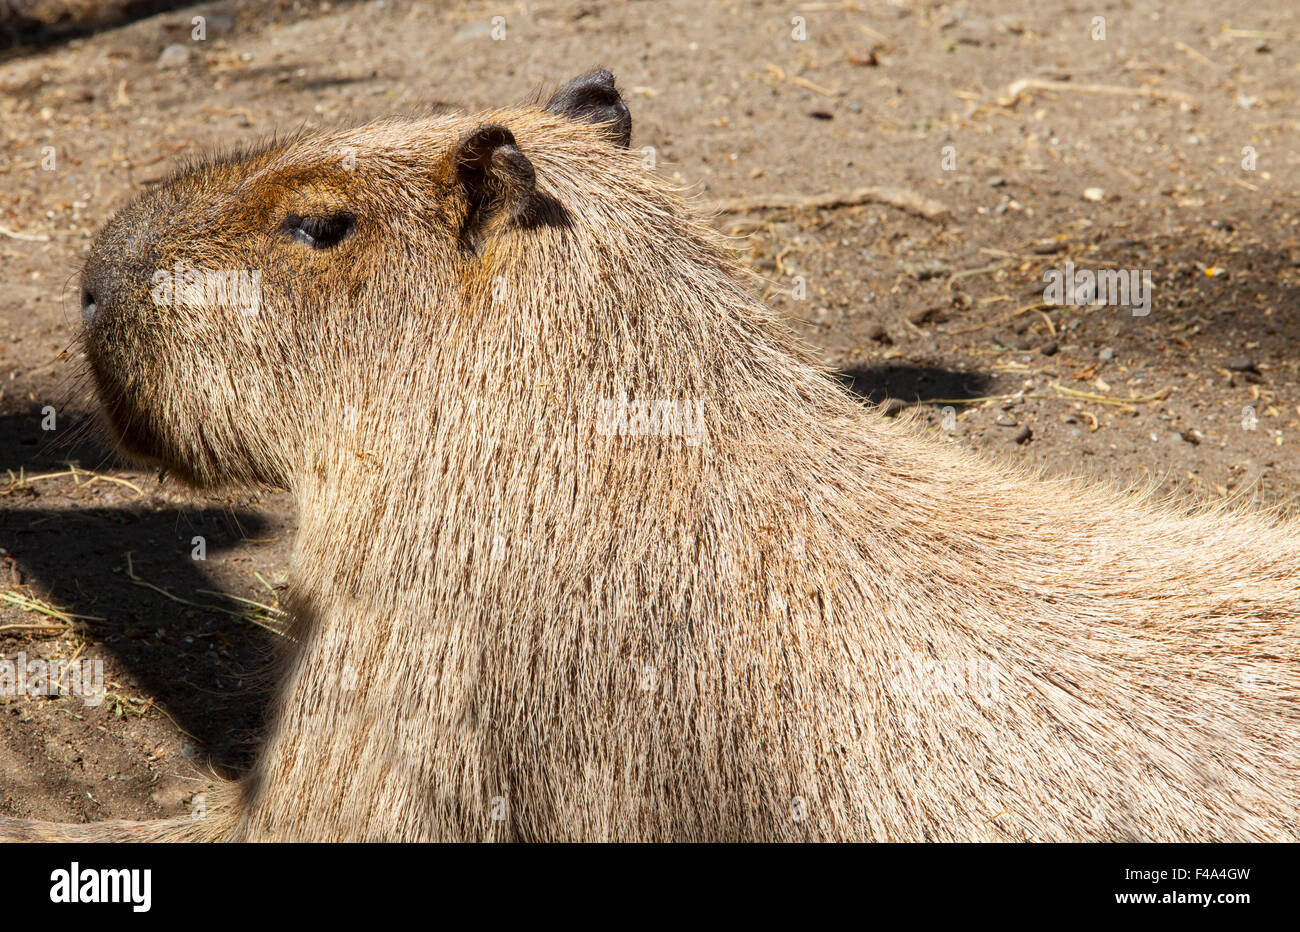 Roditore più grande in tutto il mondo, capibara o Hydrochoerus hydrochaeris Foto Stock